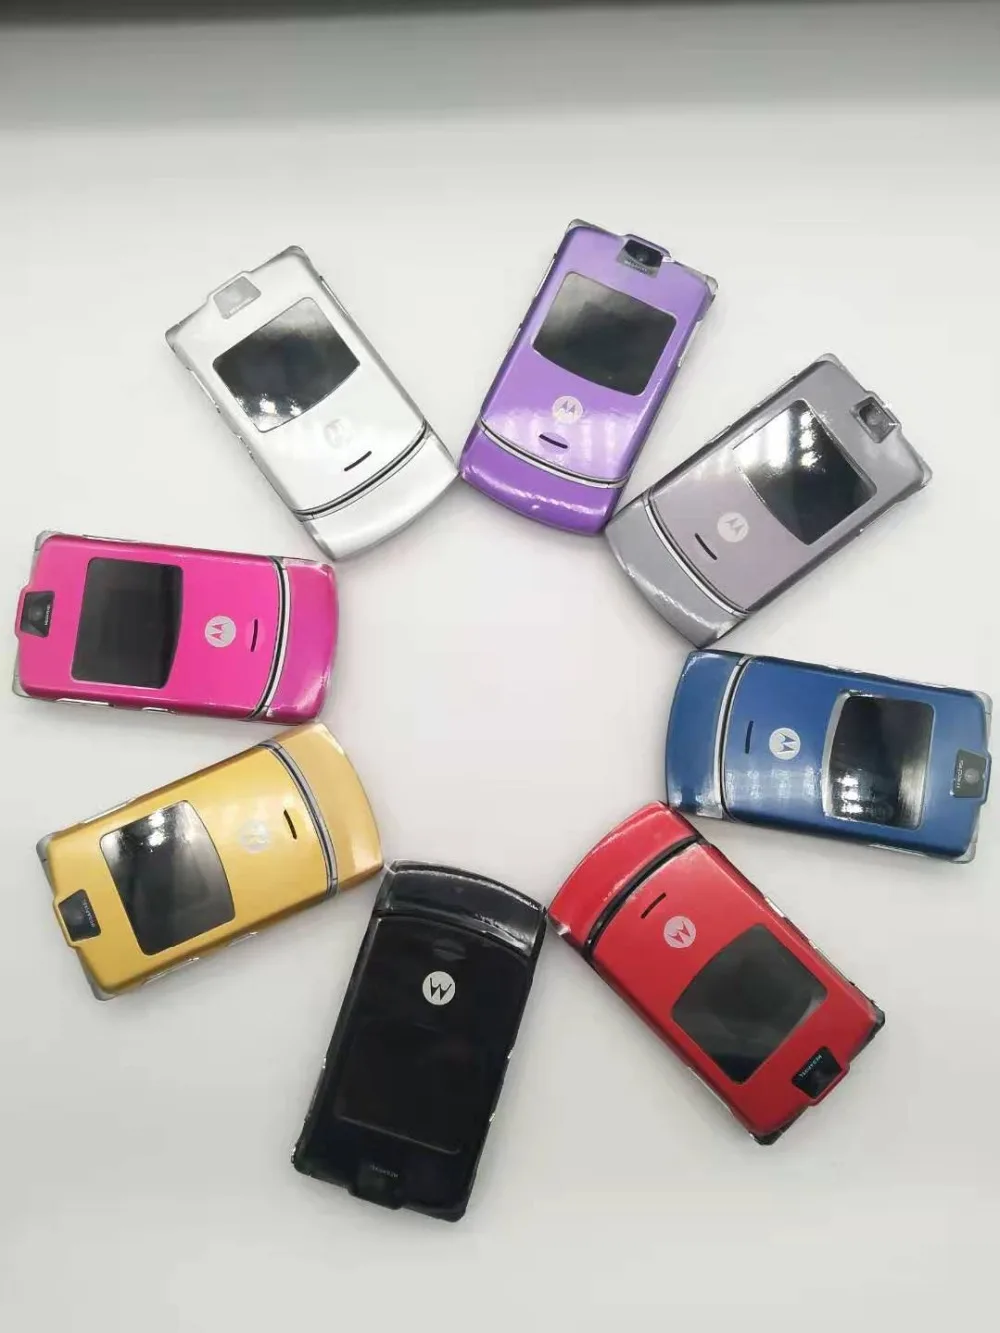 Щепка Цвет~ Всемирная версия флип диапазона квада GSM Motorola DROID Razr V3 мобильного телефона один год гарантии